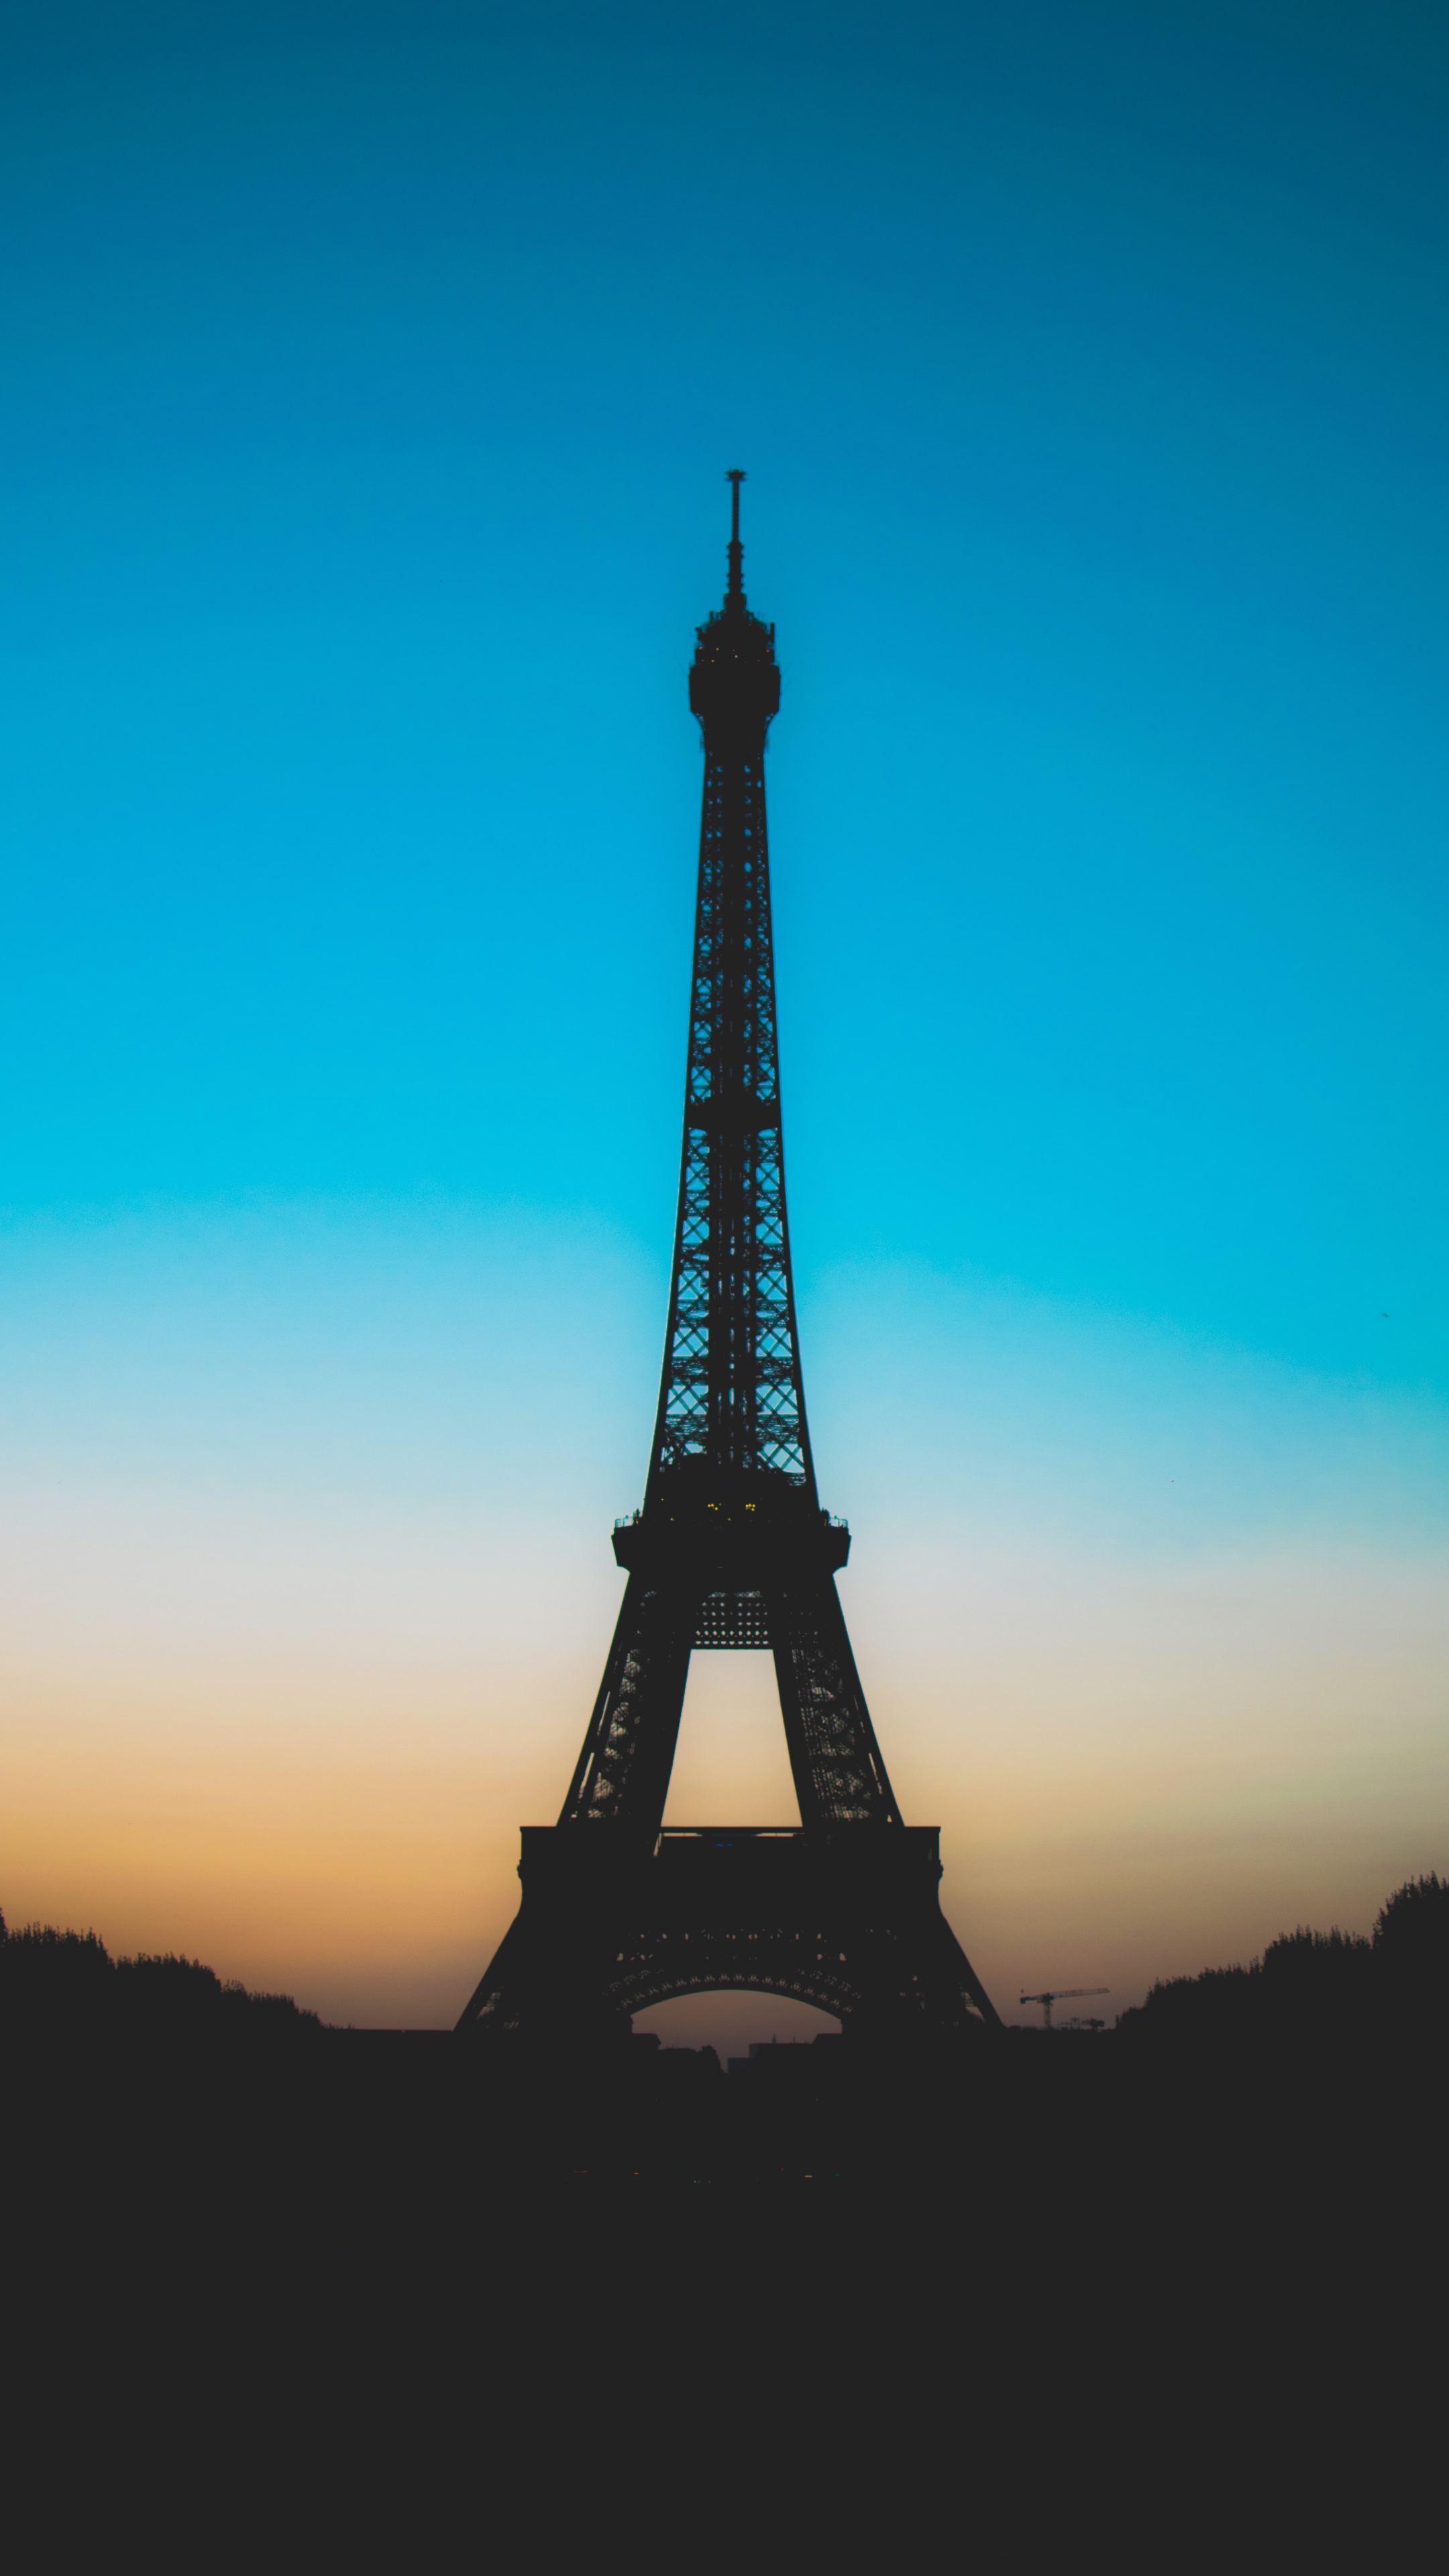 来自浪漫城市法国<span style='color:red;'>巴黎</span>的埃菲尔铁塔高清摄影手机壁纸推荐下载